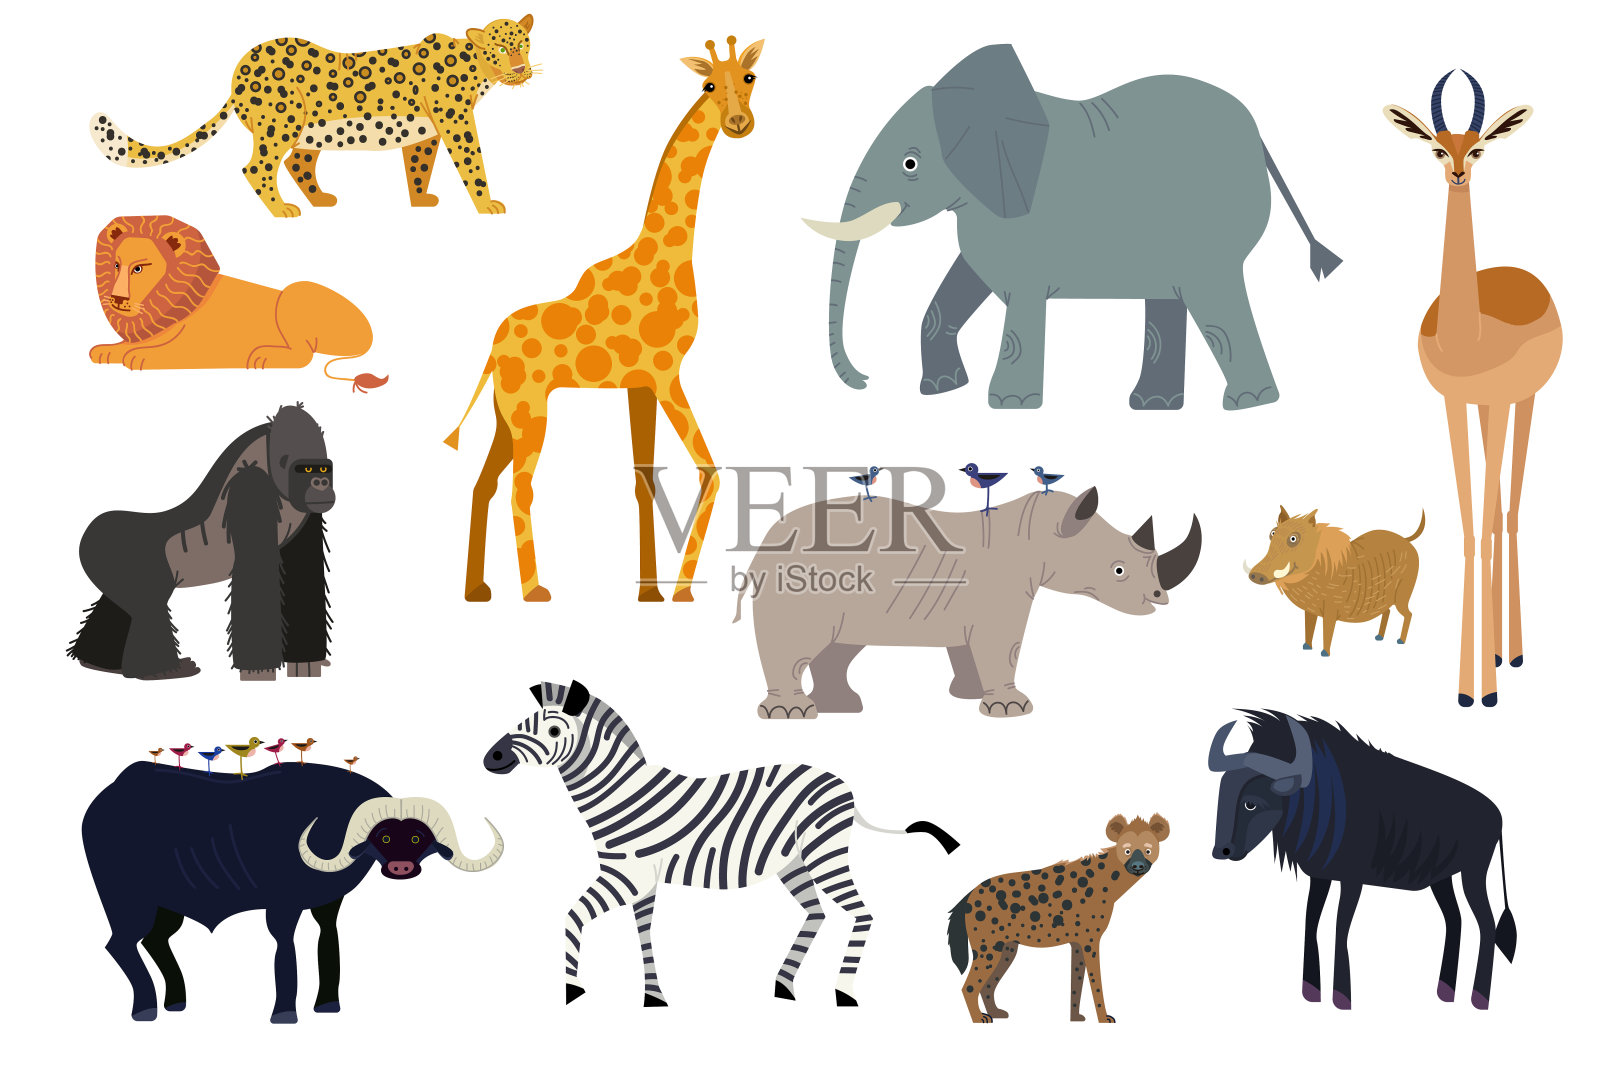 非洲野生动物宽屏壁纸-动物壁纸-壁纸下载-www.pp3.cn